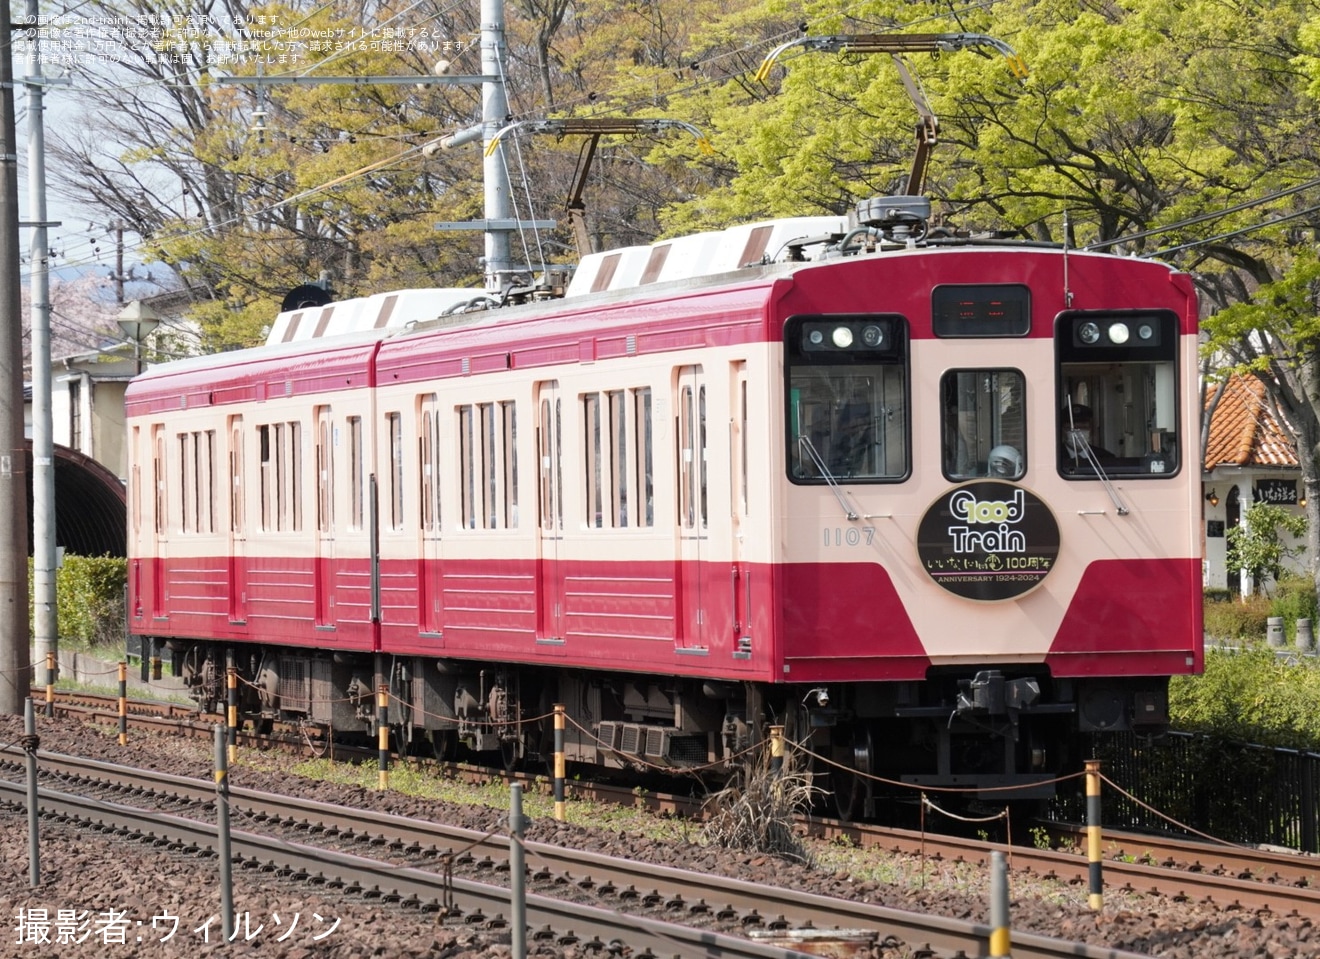 【福島交通】レトロデザイン列車「みんなつながる、Good Train」ラッピング開始の拡大写真